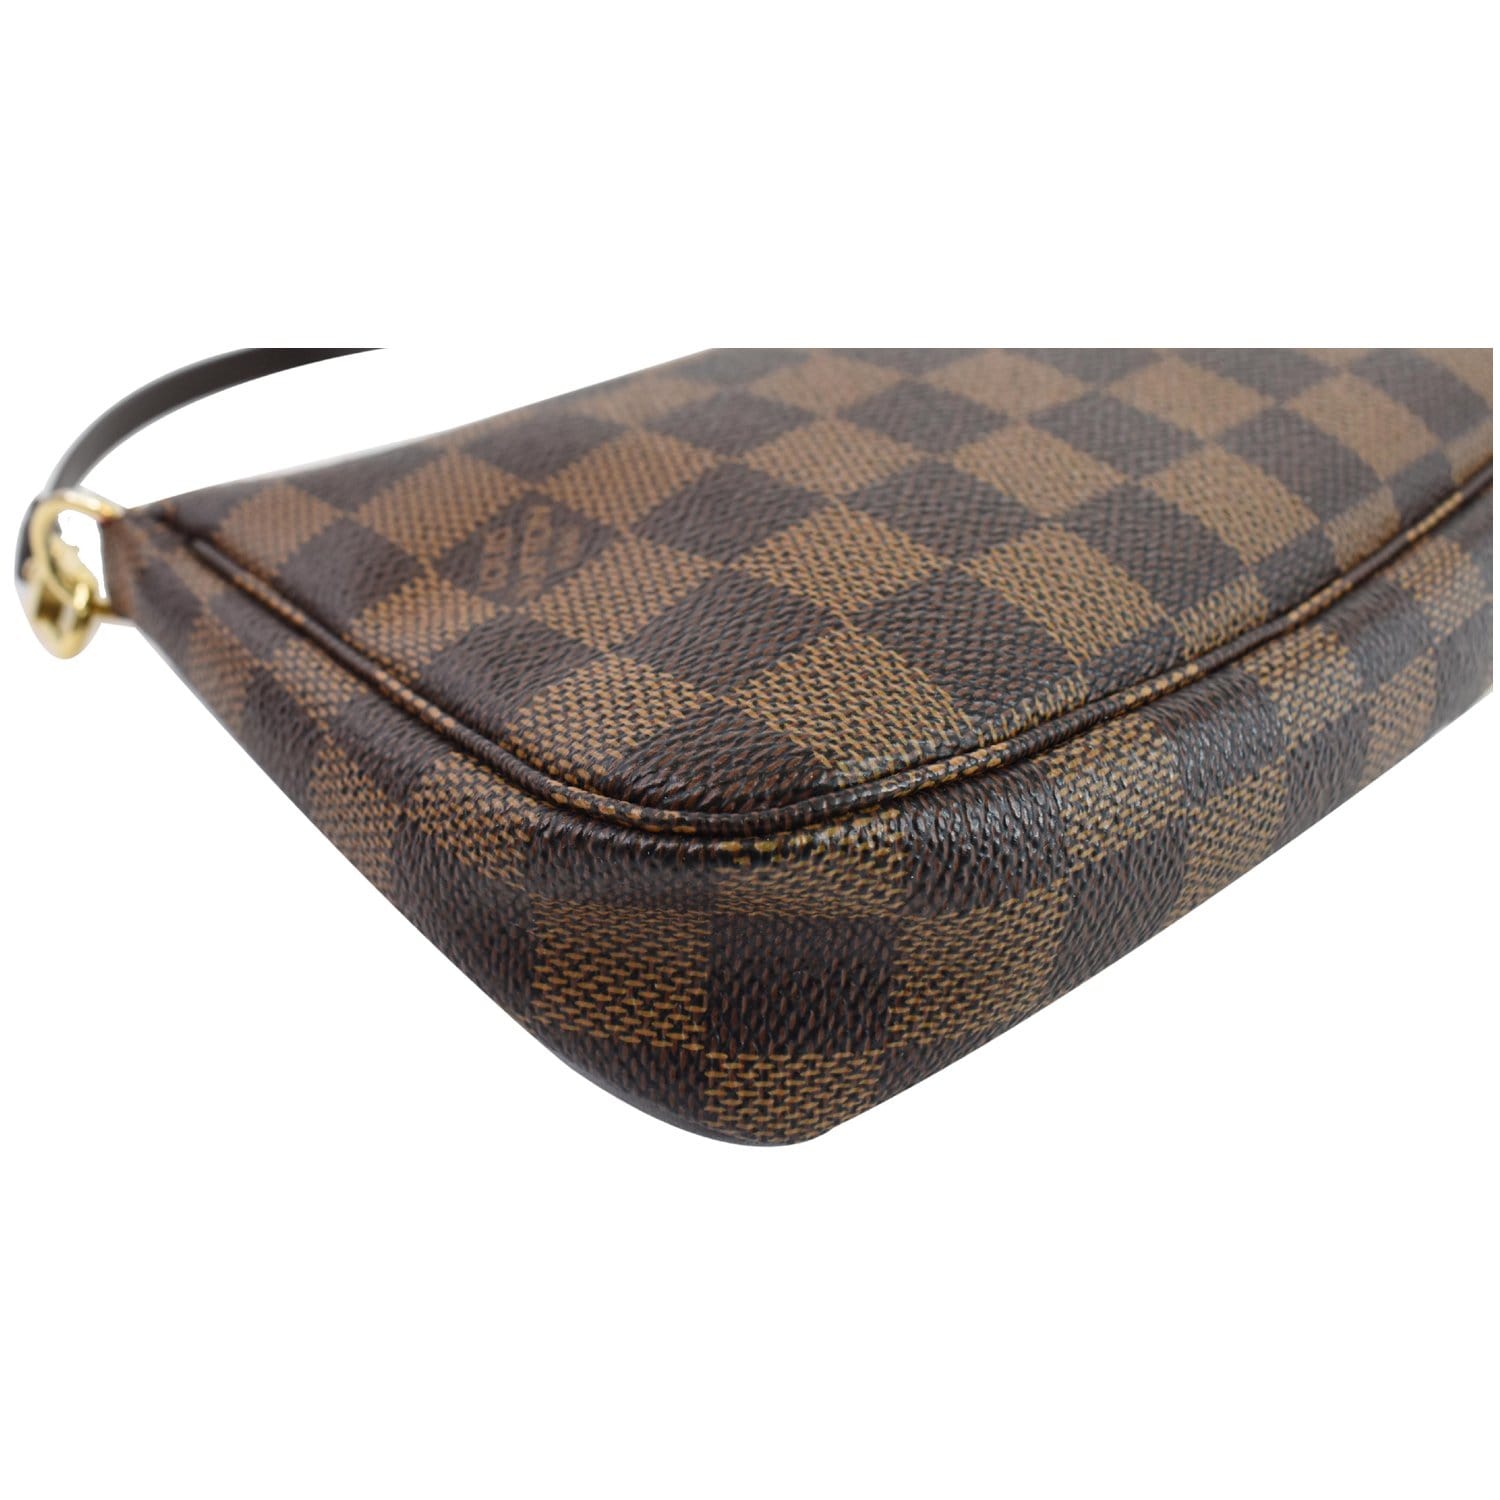 Louis Vuitton 2021 Damier Ebene Mini Pochette Accessoires - Brown Mini  Bags, Handbags - LOU541856